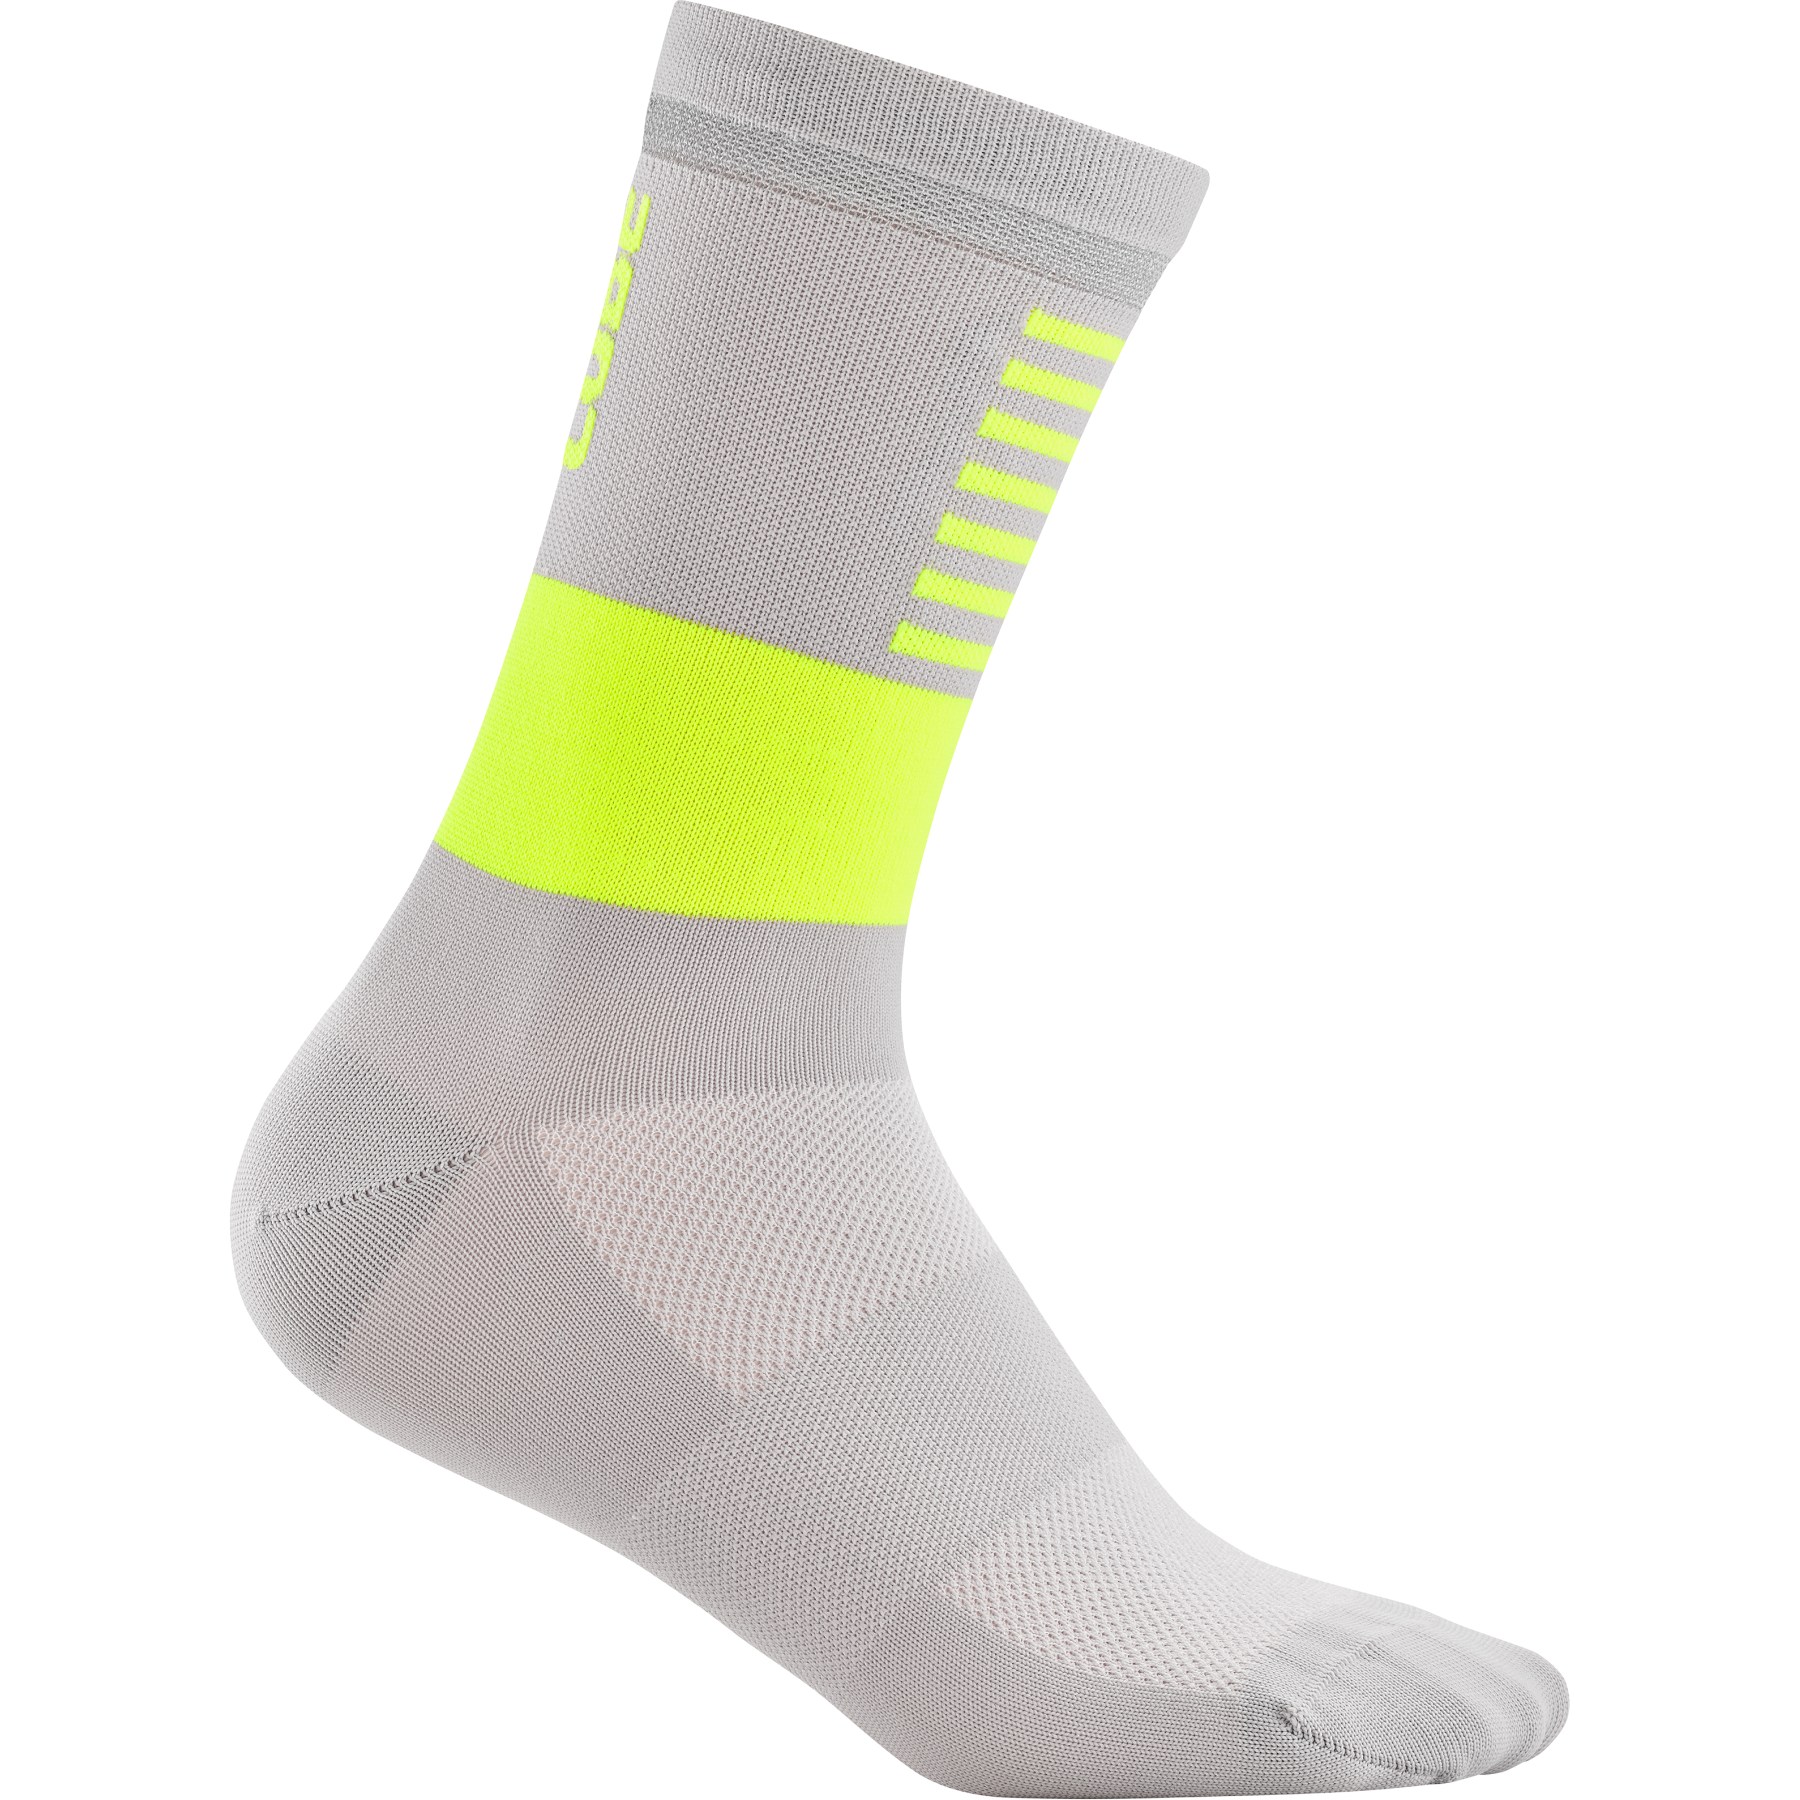 Produktbild von CUBE Safety High Cut Socken - gelb